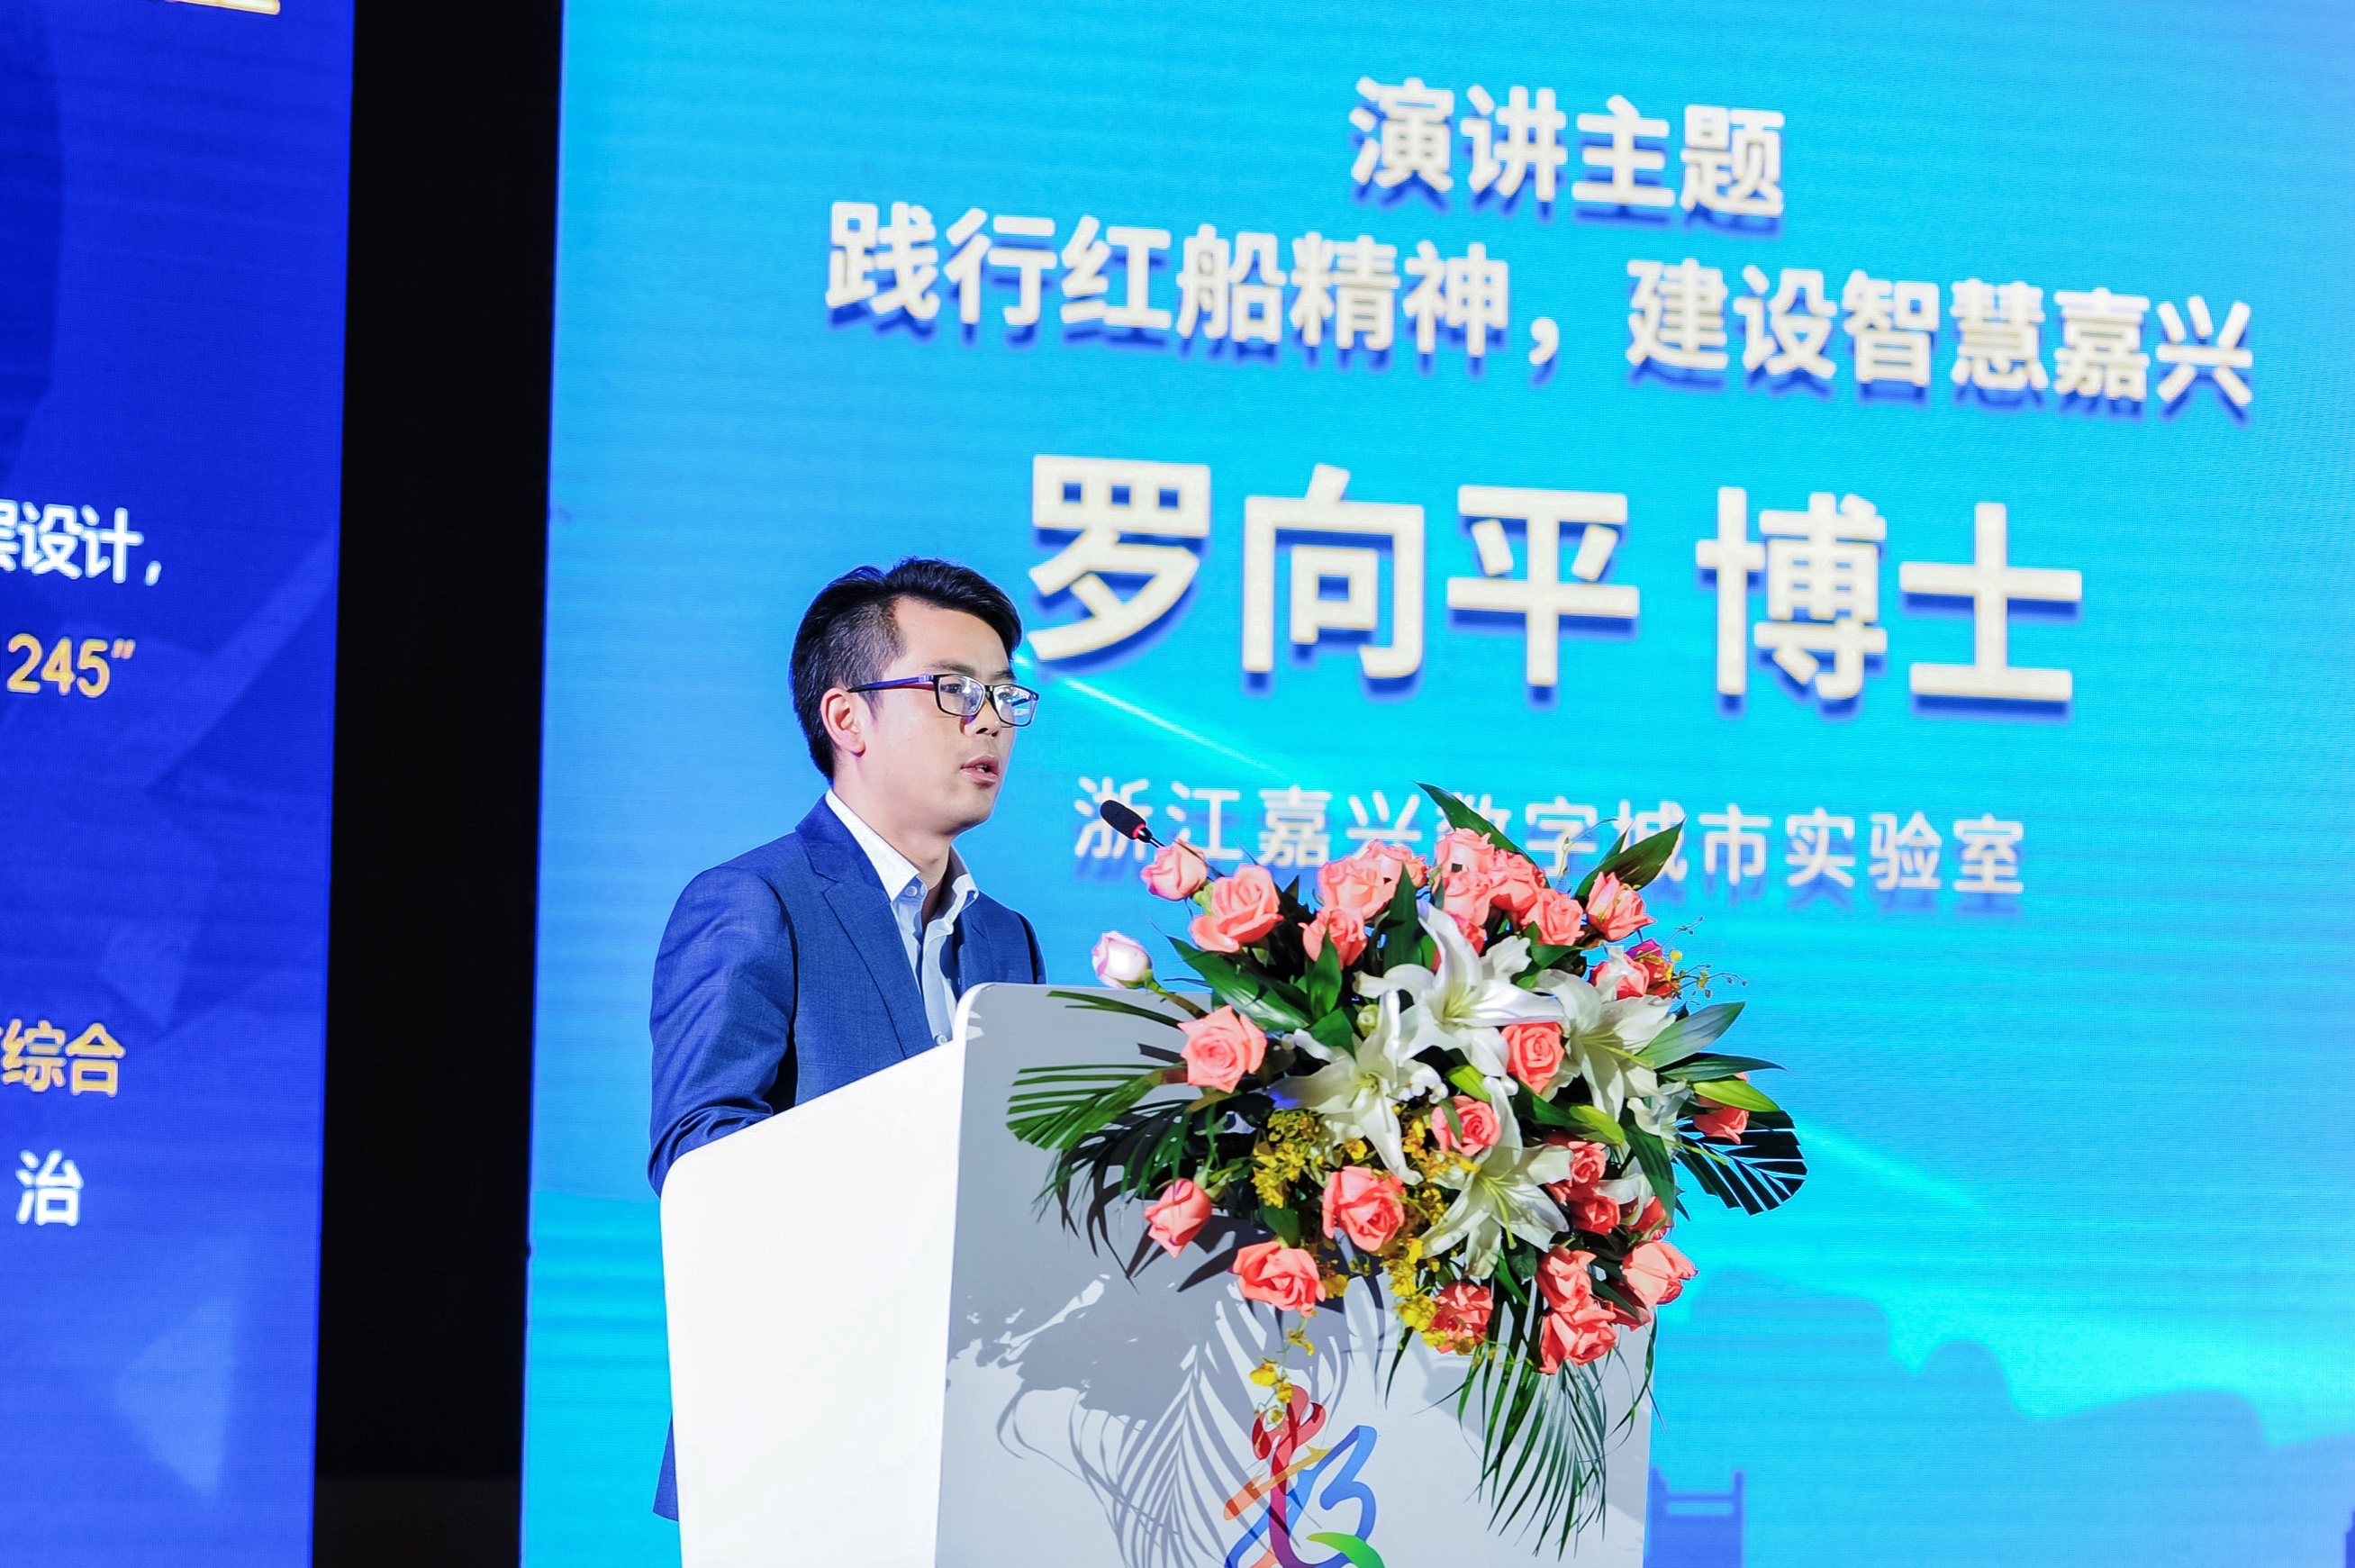 嘉数公司受邀参加2021中国电科城市数字治理高峰论坛并做主旨演讲